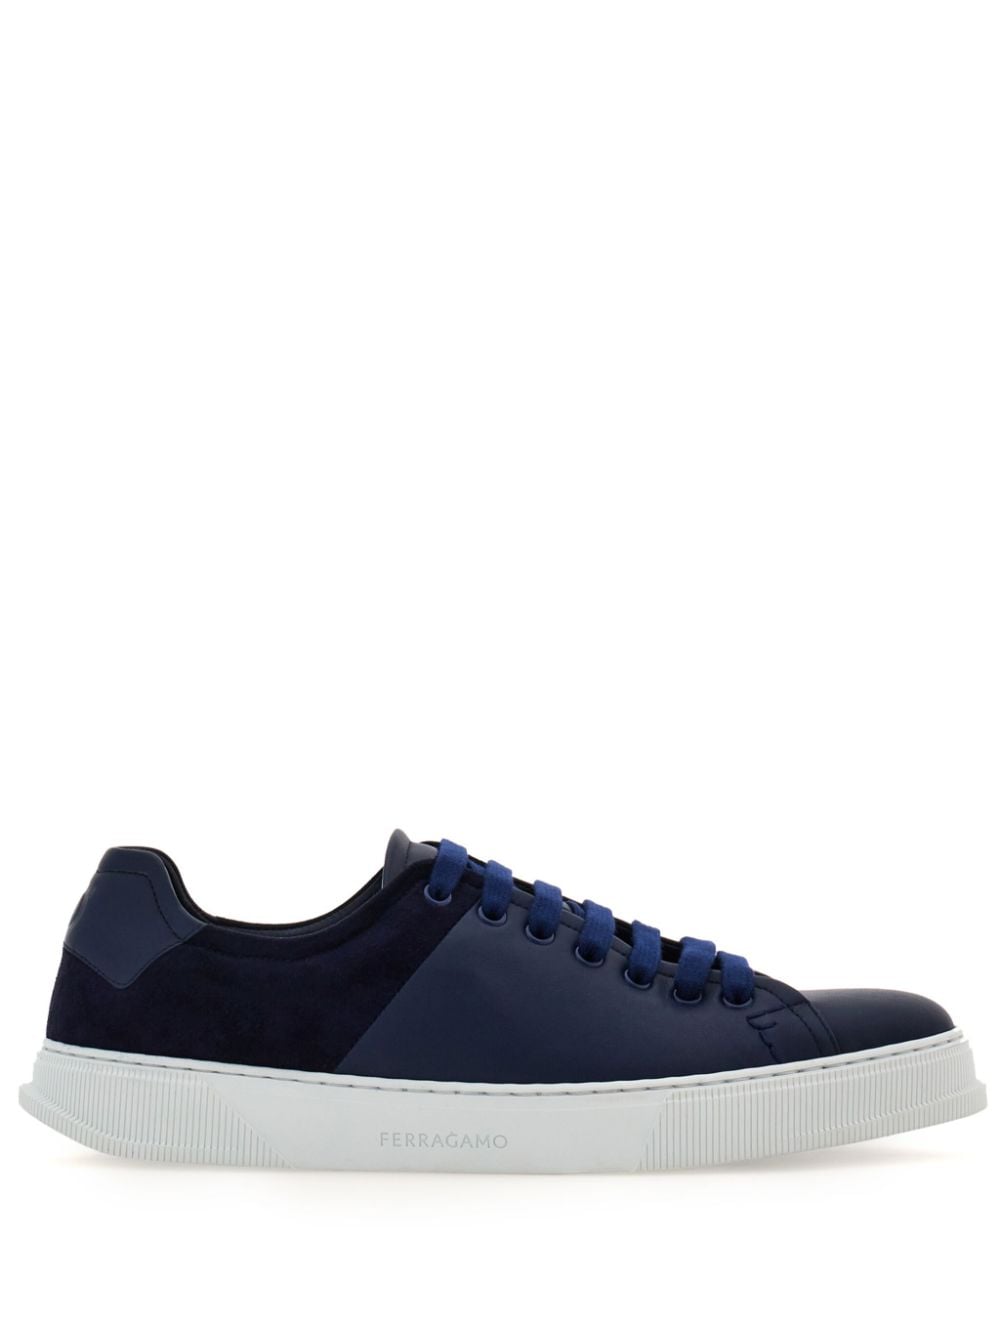 Ferragamo lace-up leather sneakers - Blue von Ferragamo